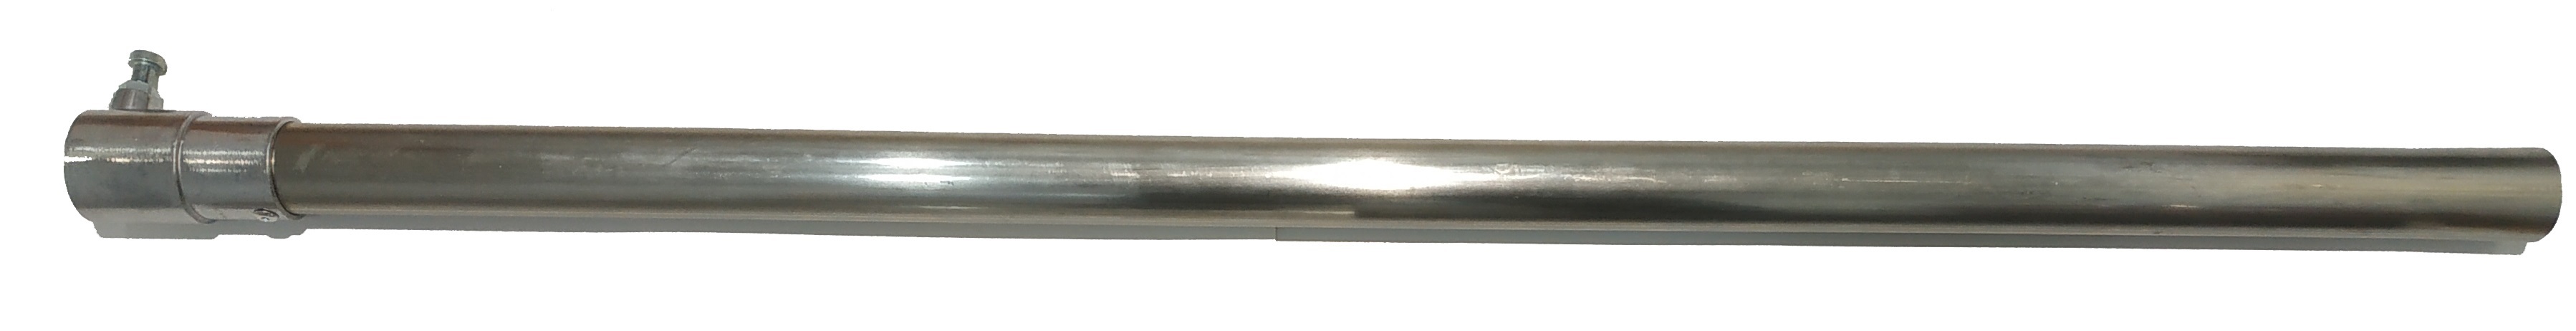 Rura aluminiowa 1m. bez ochrony do zestawu piekarniczego z szybkozłączem 004.341